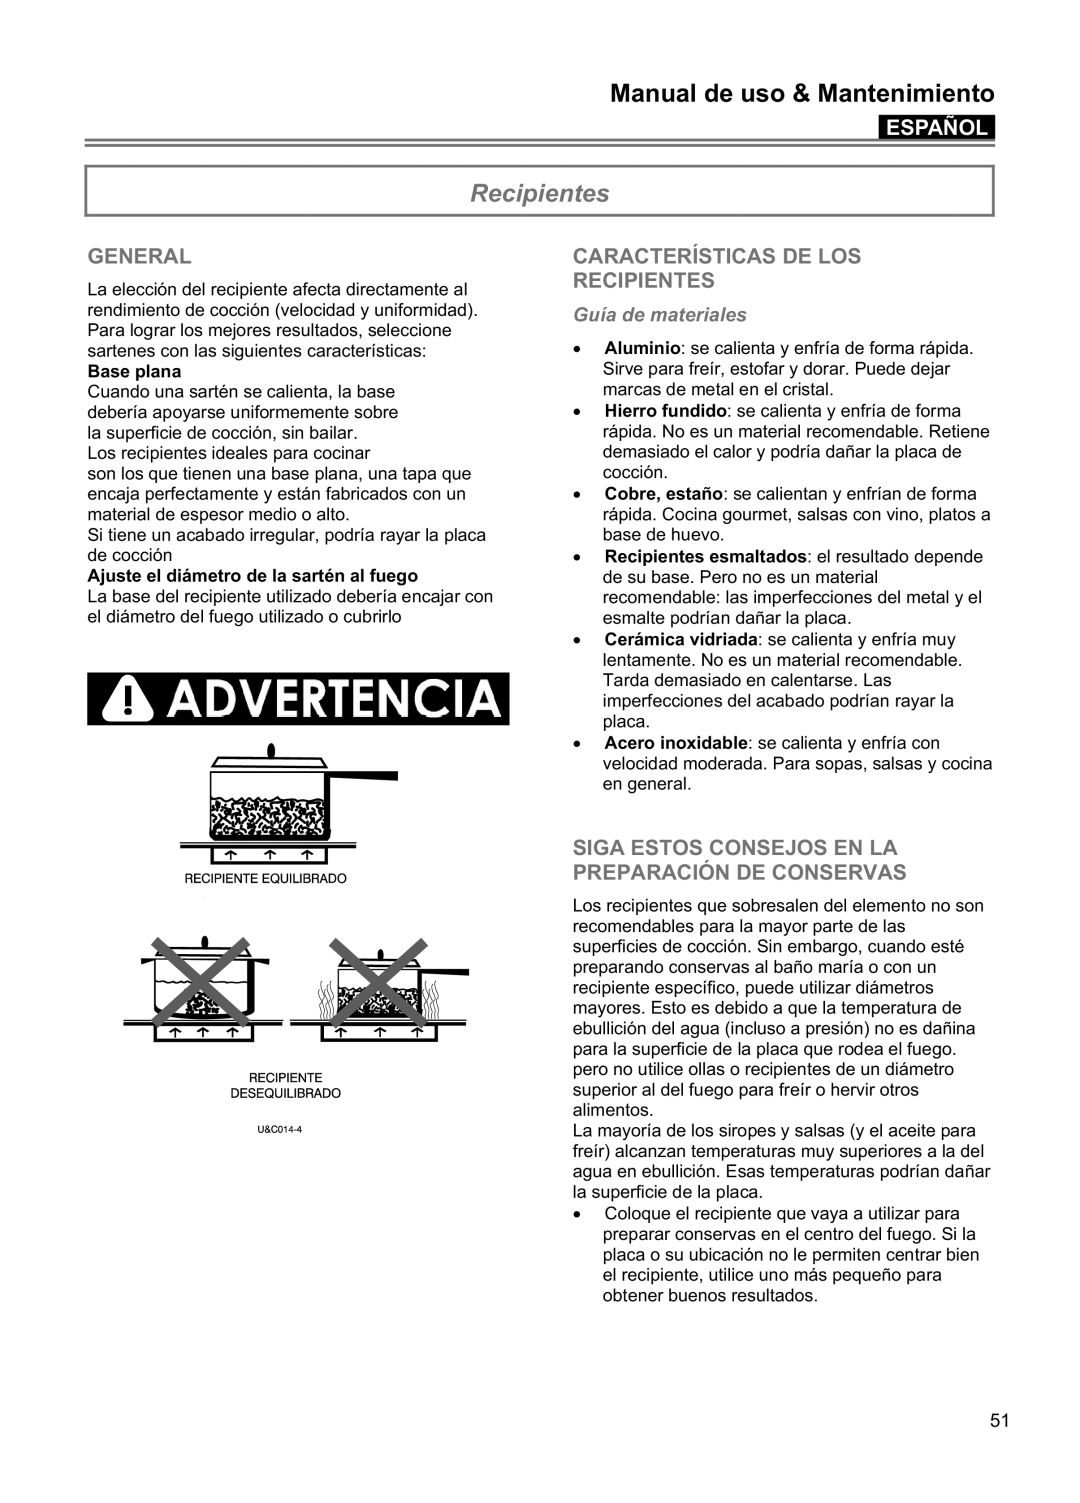 Blomberg CTE 30400 Características De Los Recipientes, Guía de materiales, Manual de uso & Mantenimiento, Español 